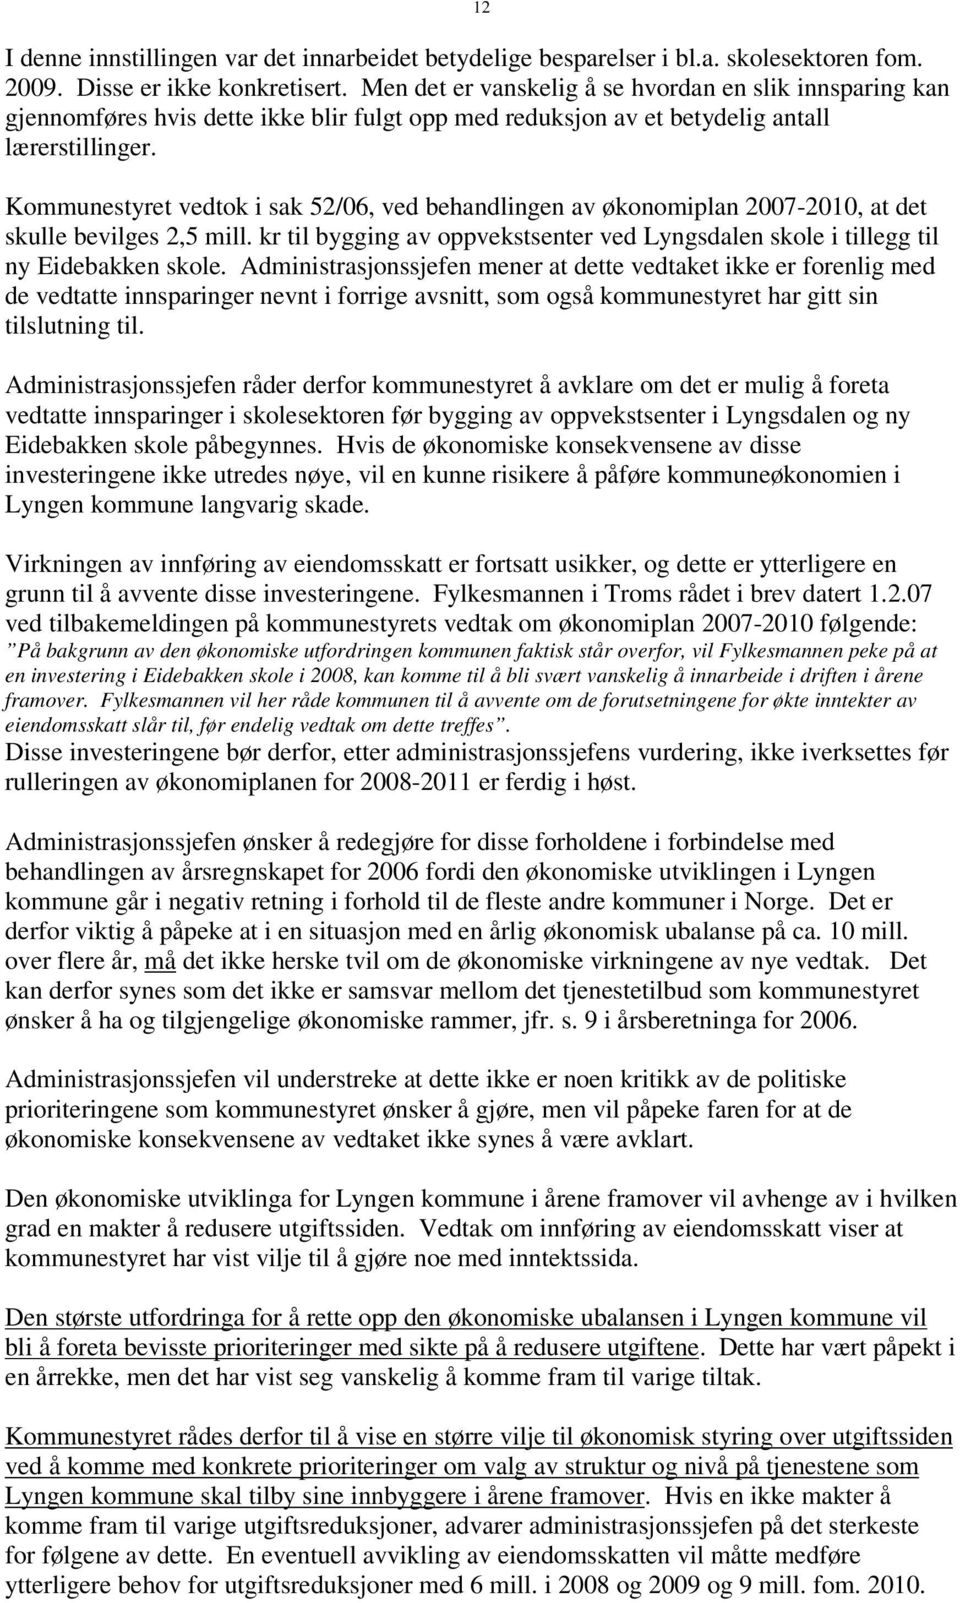 Kommunestyret vedtok i sak 52/06, ved behandlingen av økonomiplan 2007-2010, at det skulle bevilges 2,5 mill. kr til bygging av oppvekstsenter ved Lyngsdalen skole i tillegg til ny Eidebakken skole.